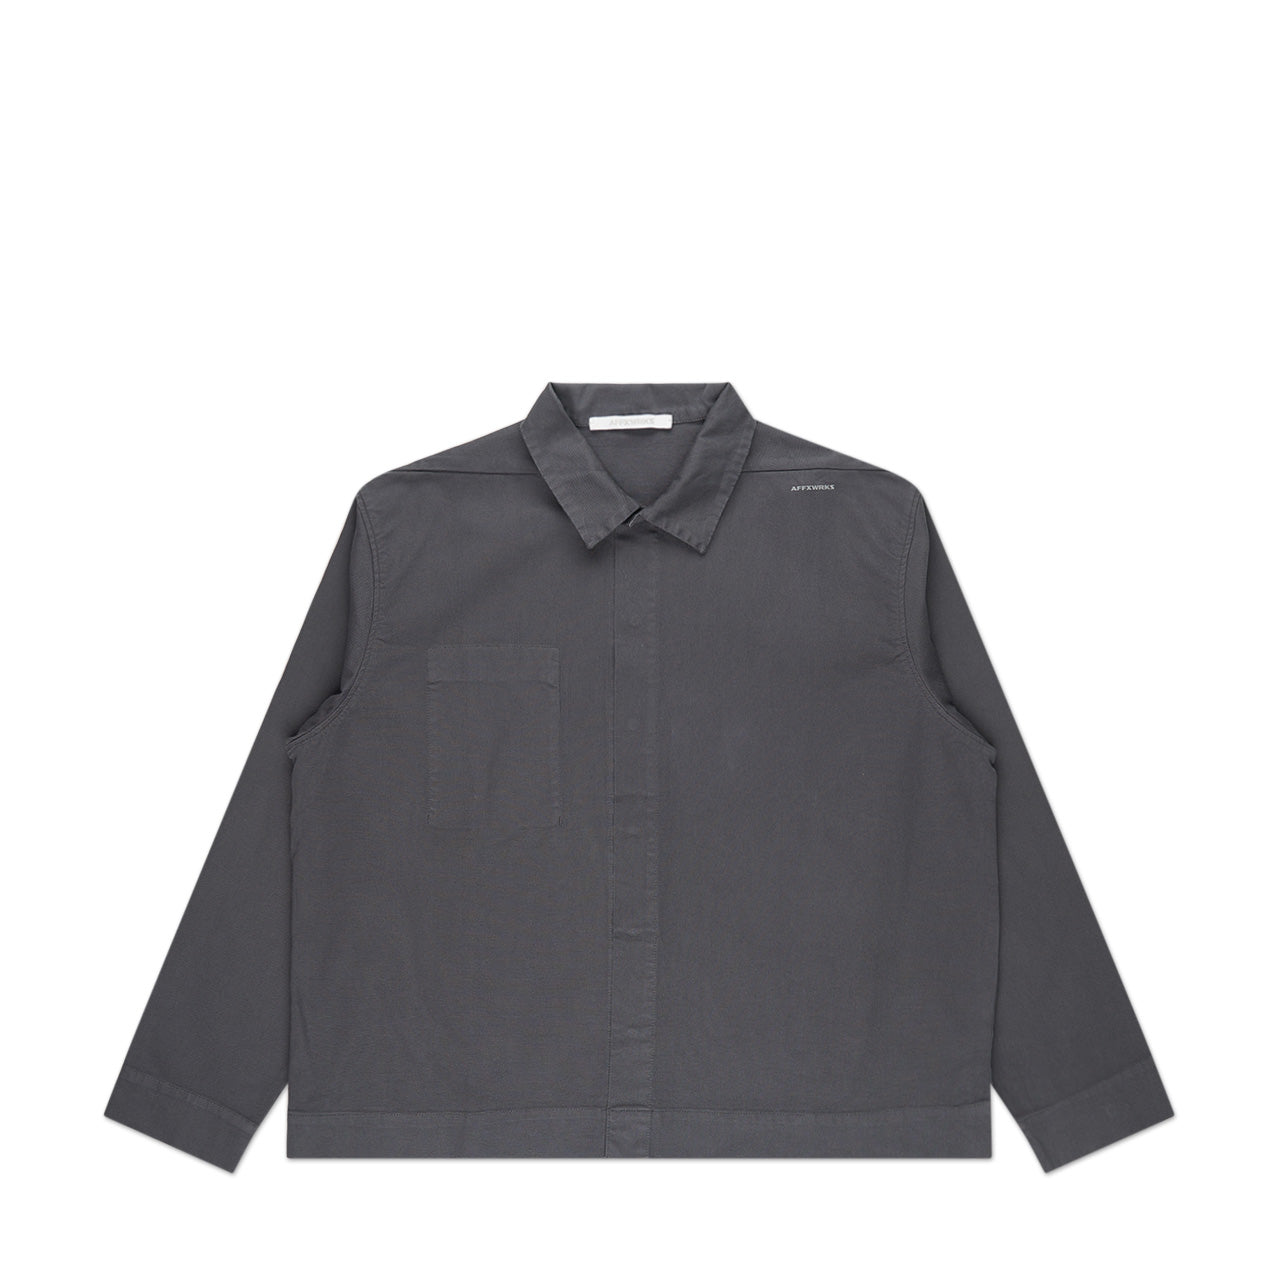 affxwrks wrks jacket (grey)